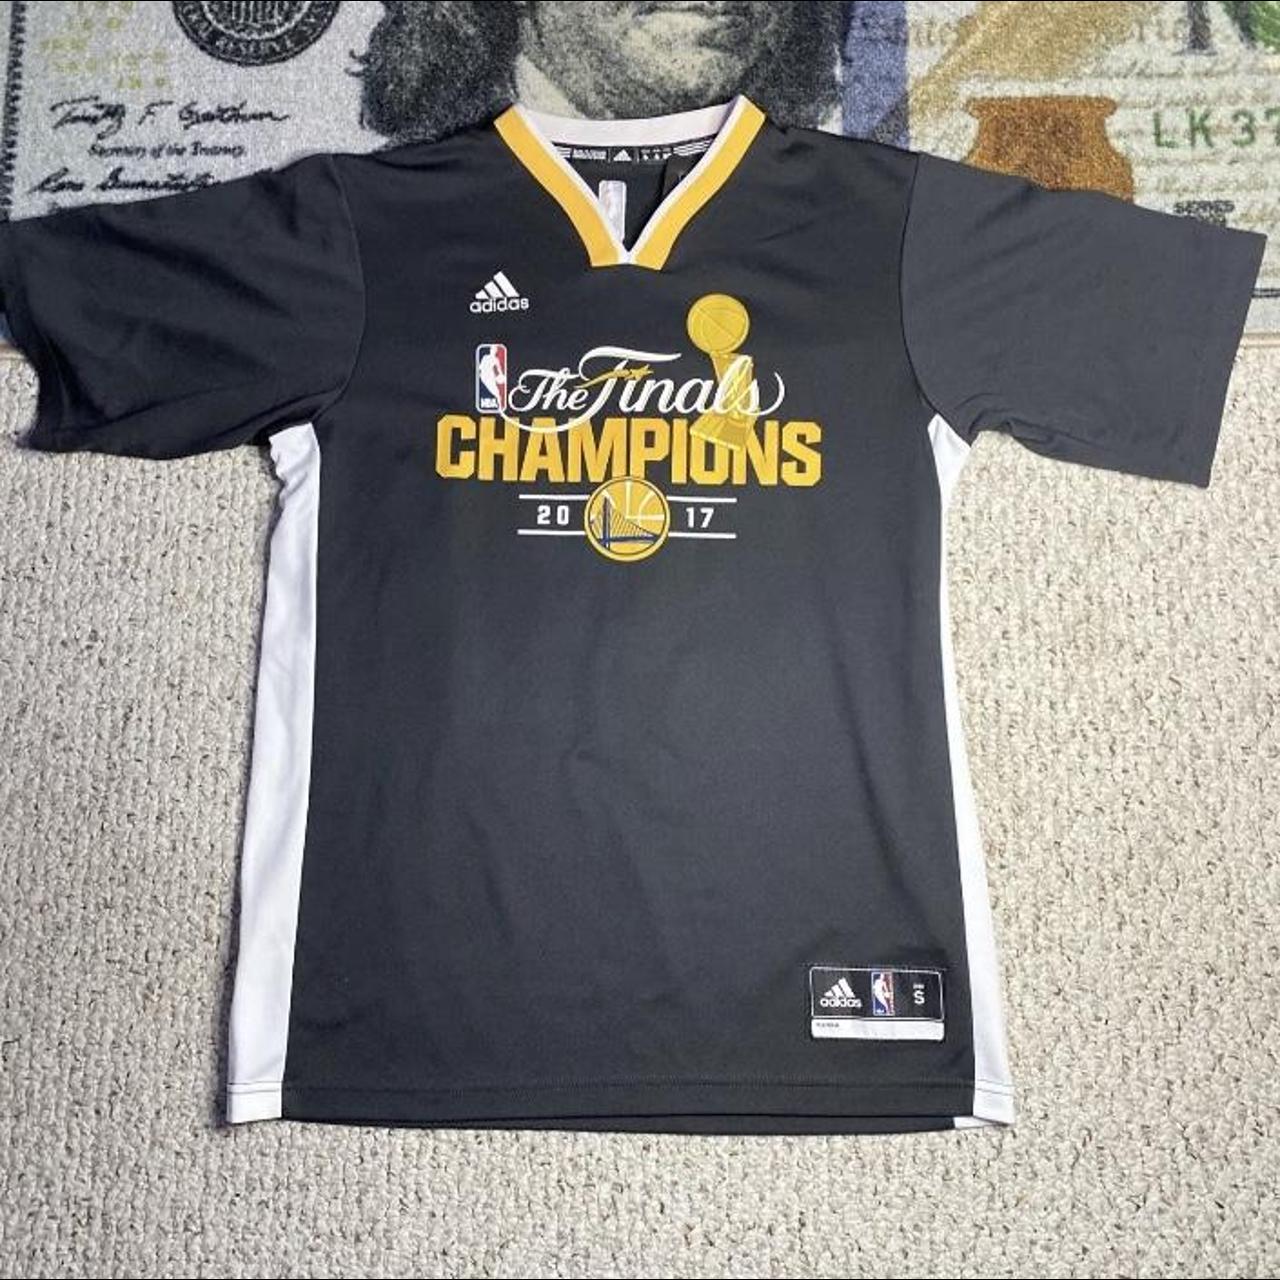 Golden state warriors Steph Curry adidas jersey - Depop